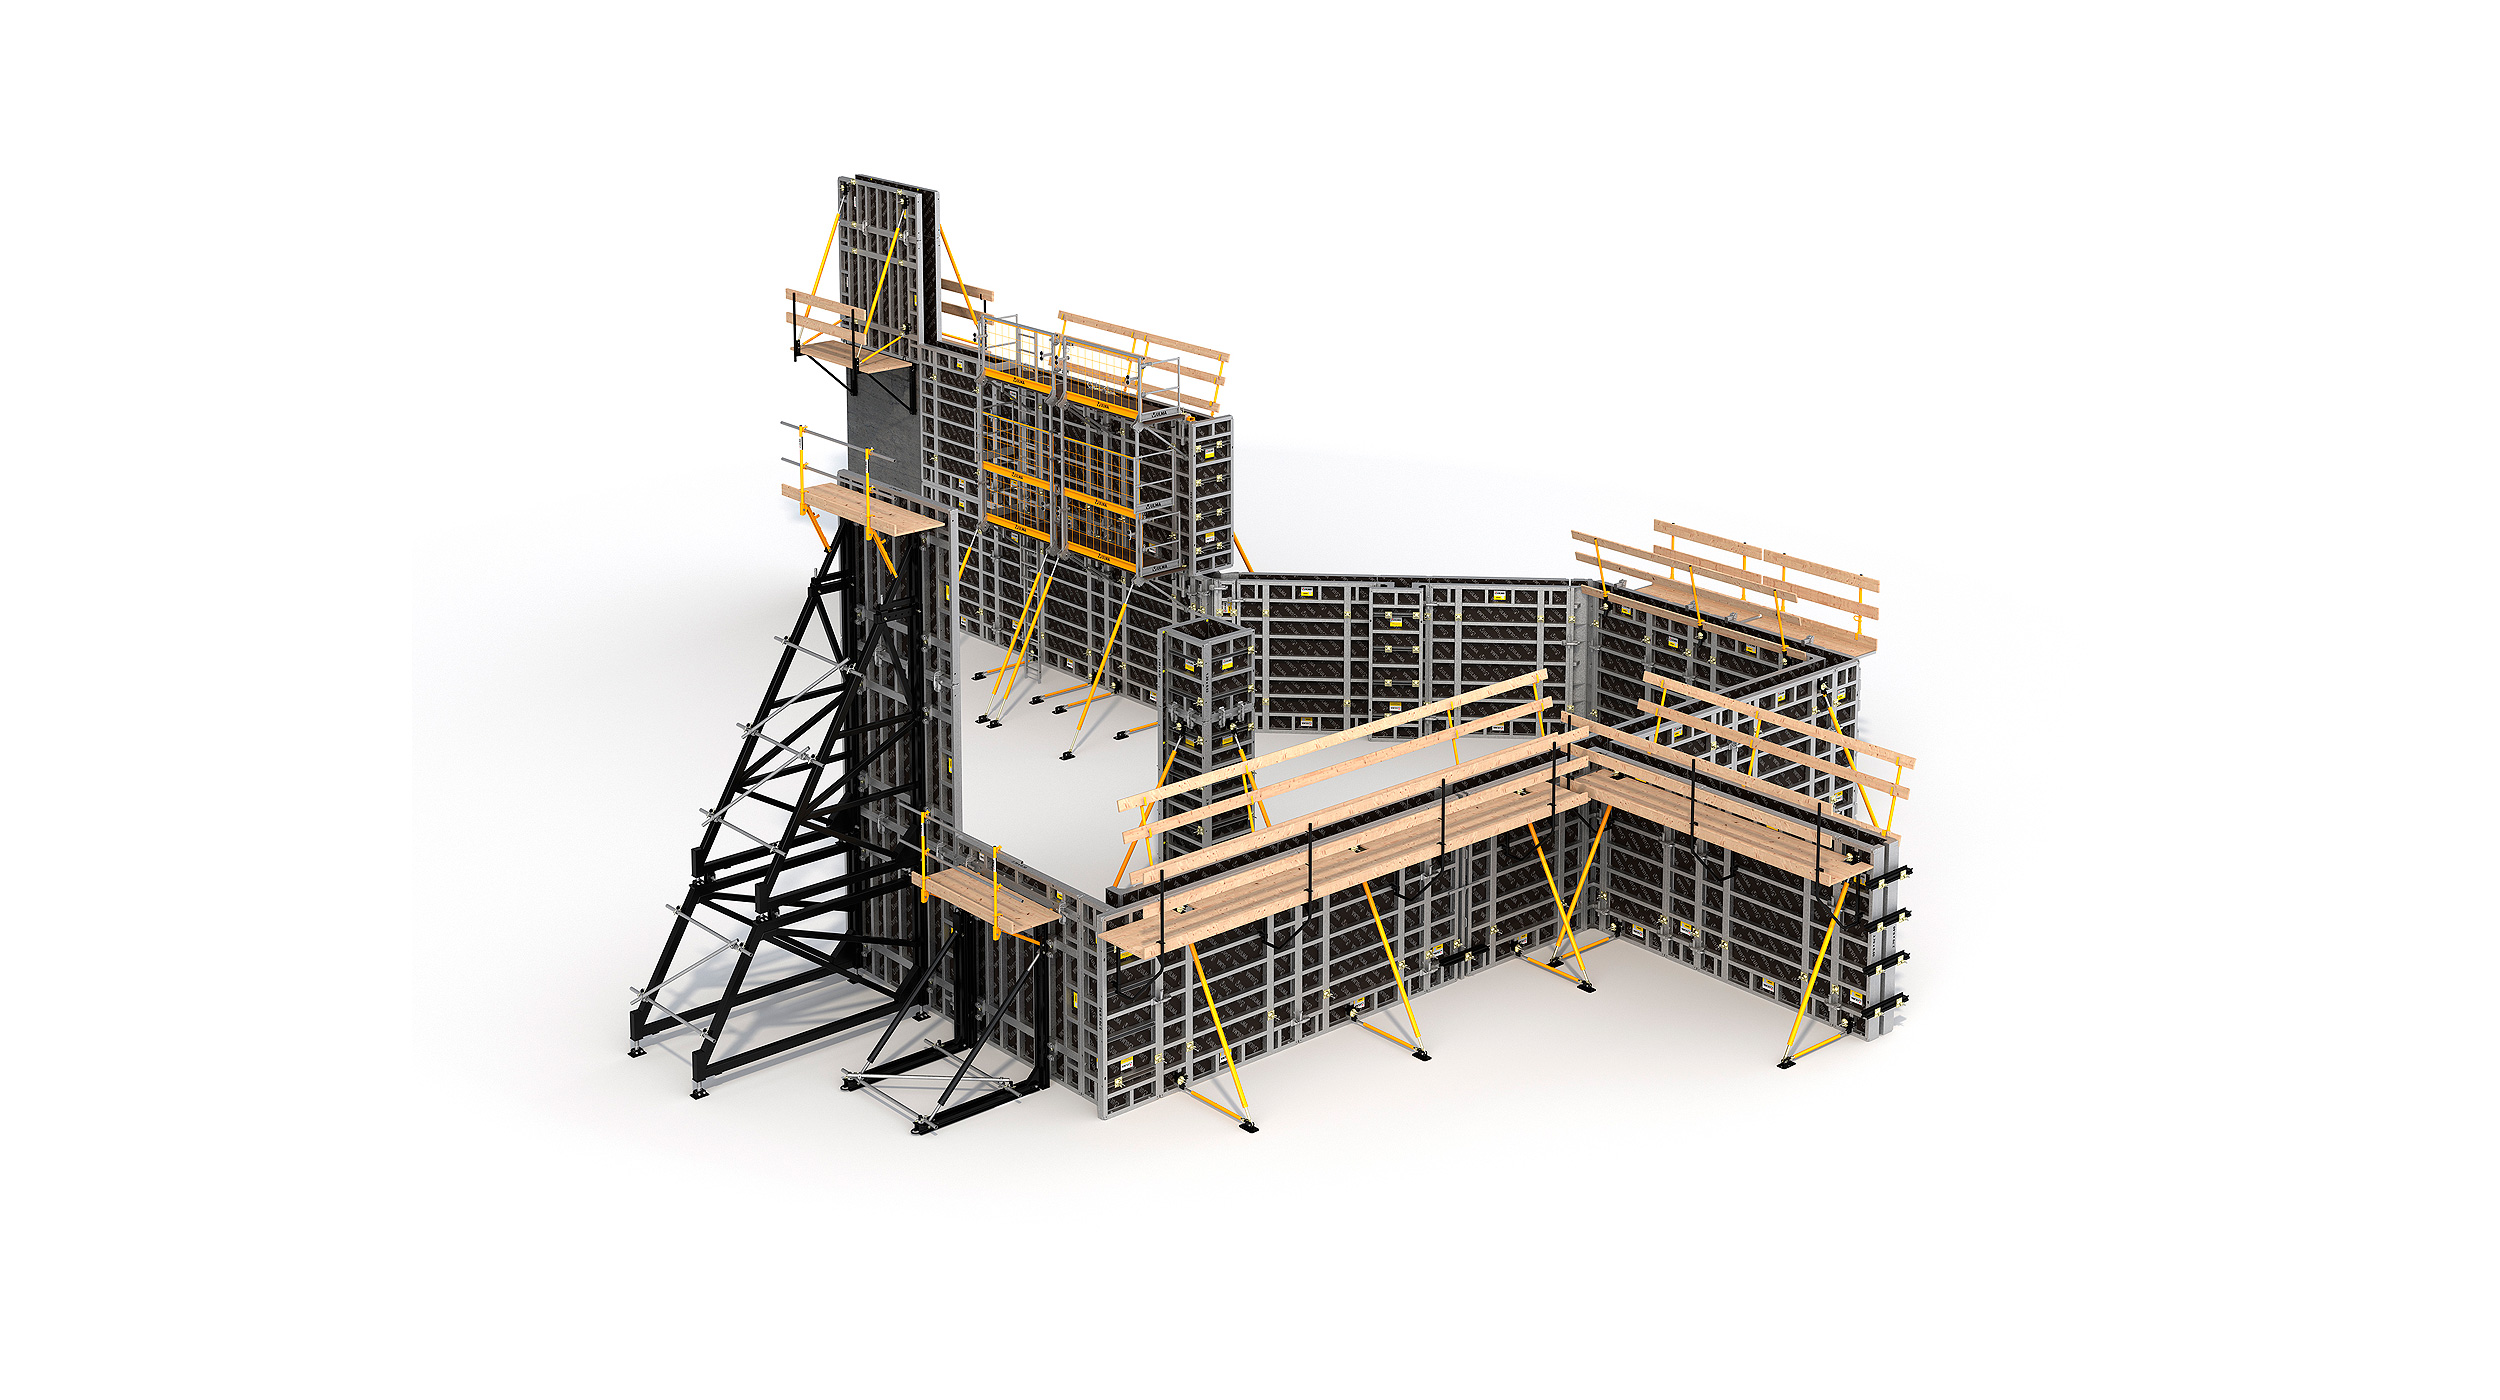 Sistema de fôrma modular e qualquer outro tipo de construção de estruturas verticais de concreto. Proporciona alto rendimento, com baixo custo de mão de obra.